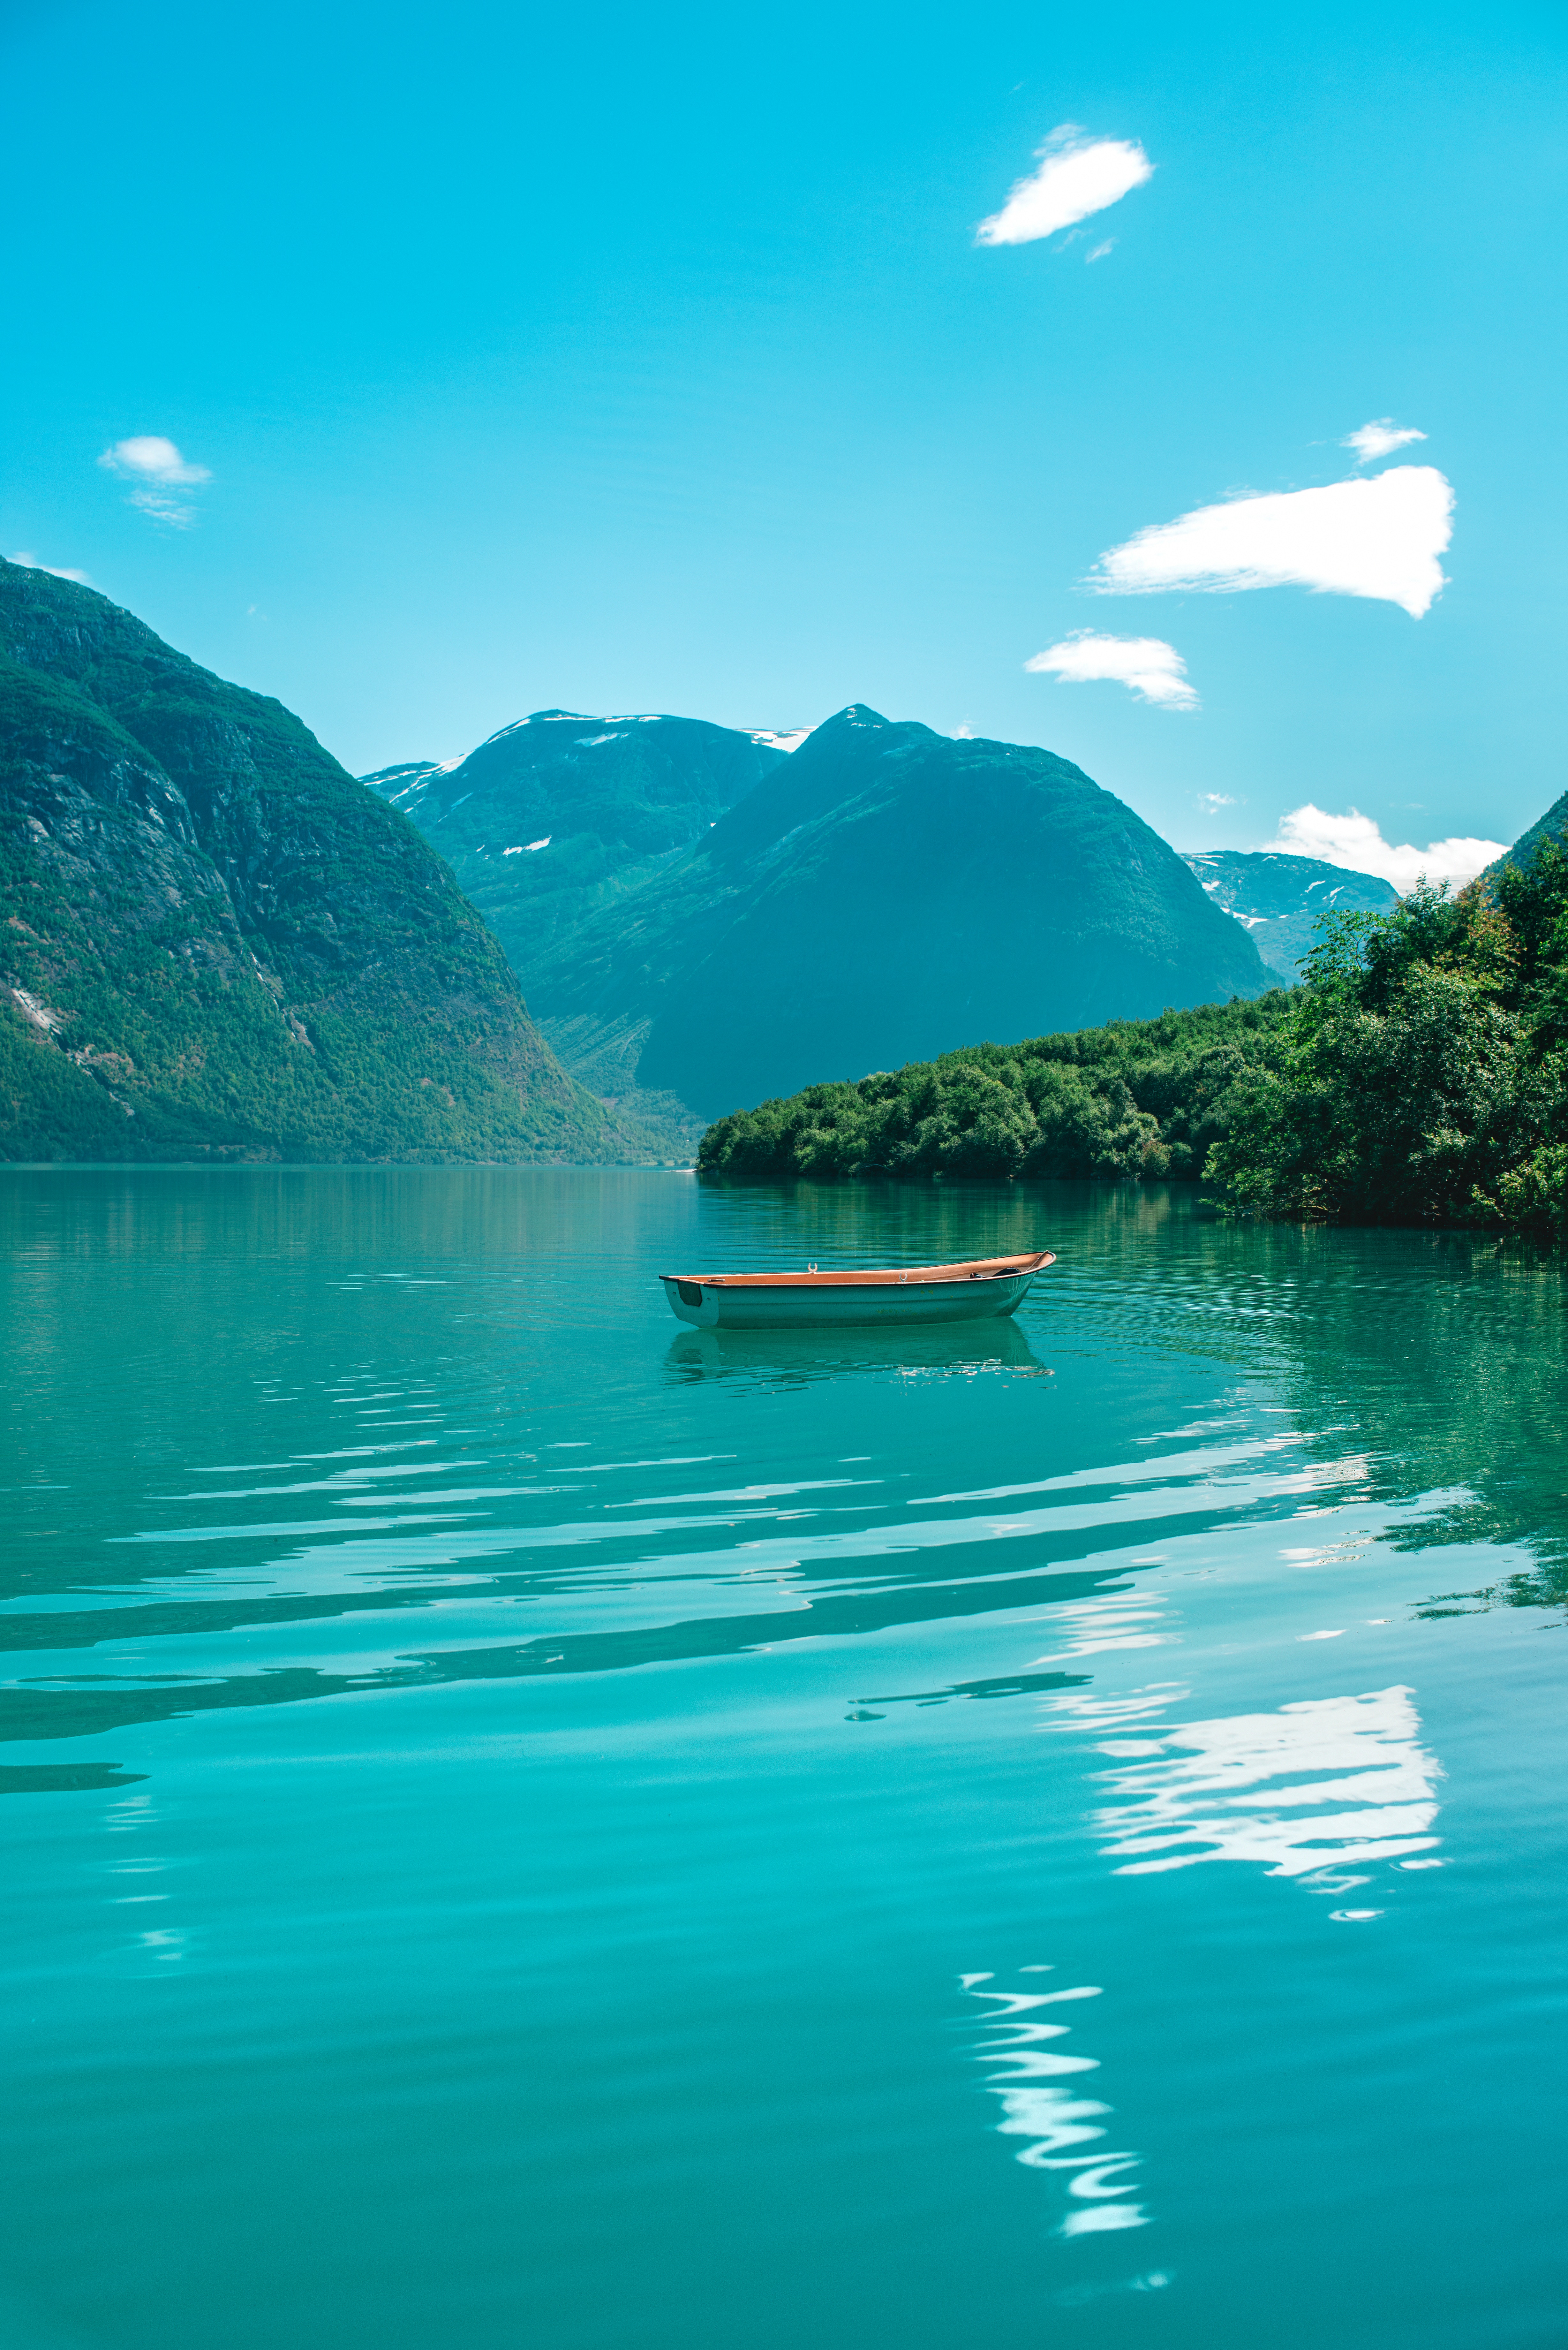 Скачать бесплатно картинку 136417: природа, горы, вода, лодка обои на телефон